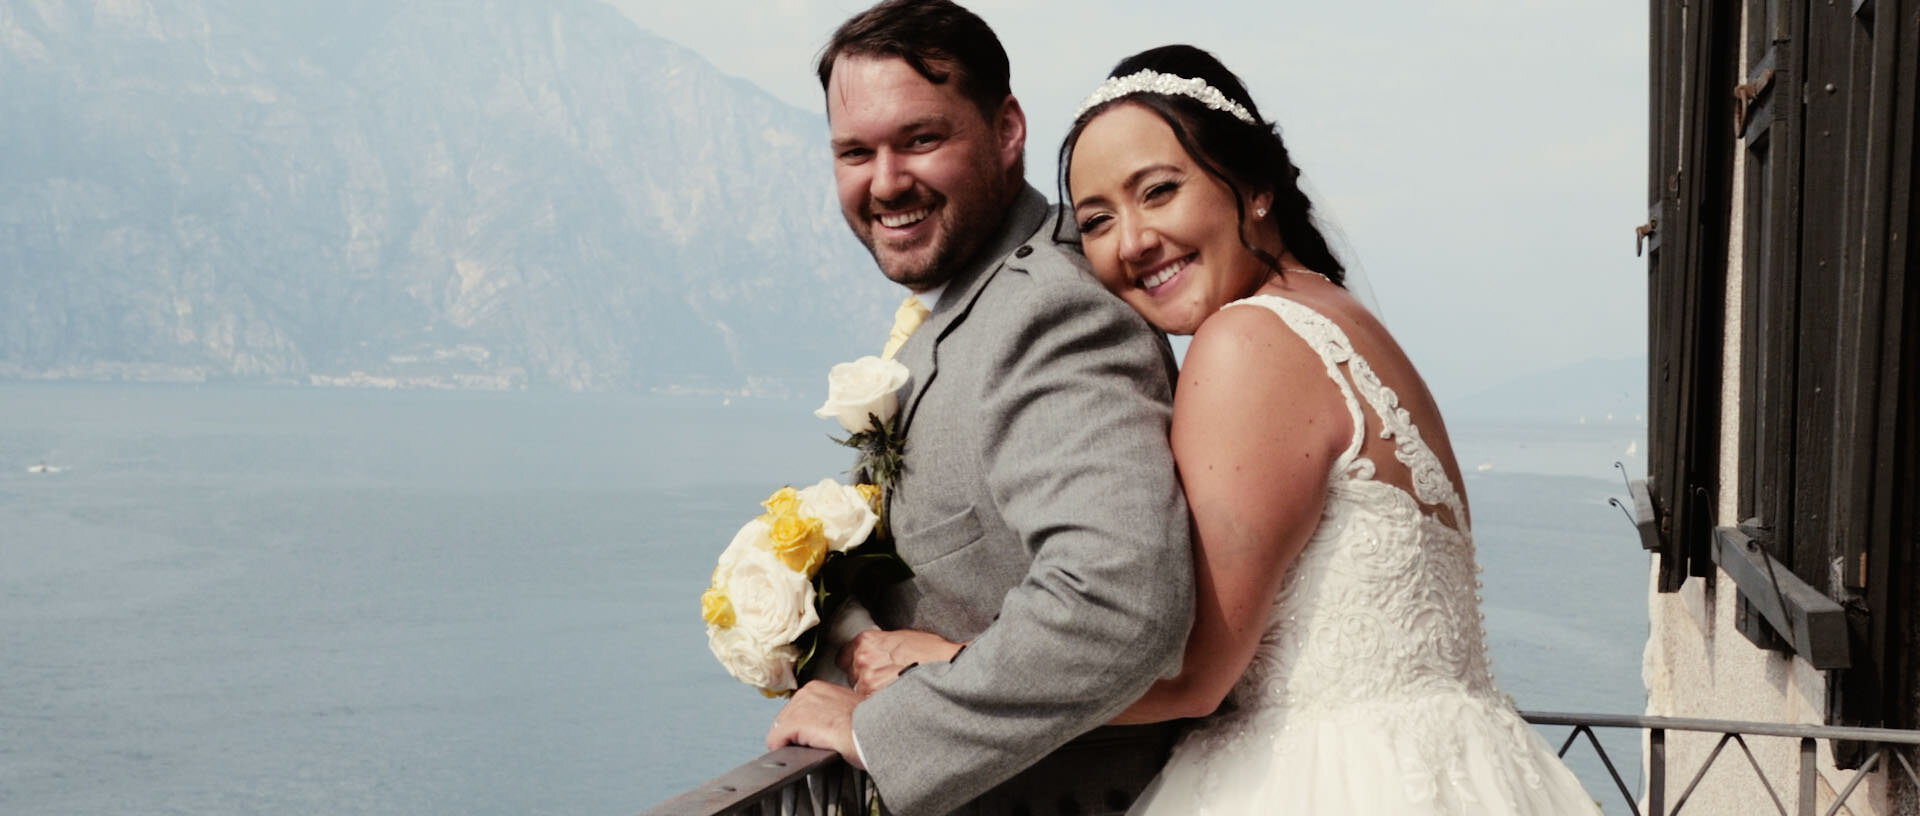 Elisa & Gavin Destination Wedding Film Lake Garda Malcesine 21.jpg